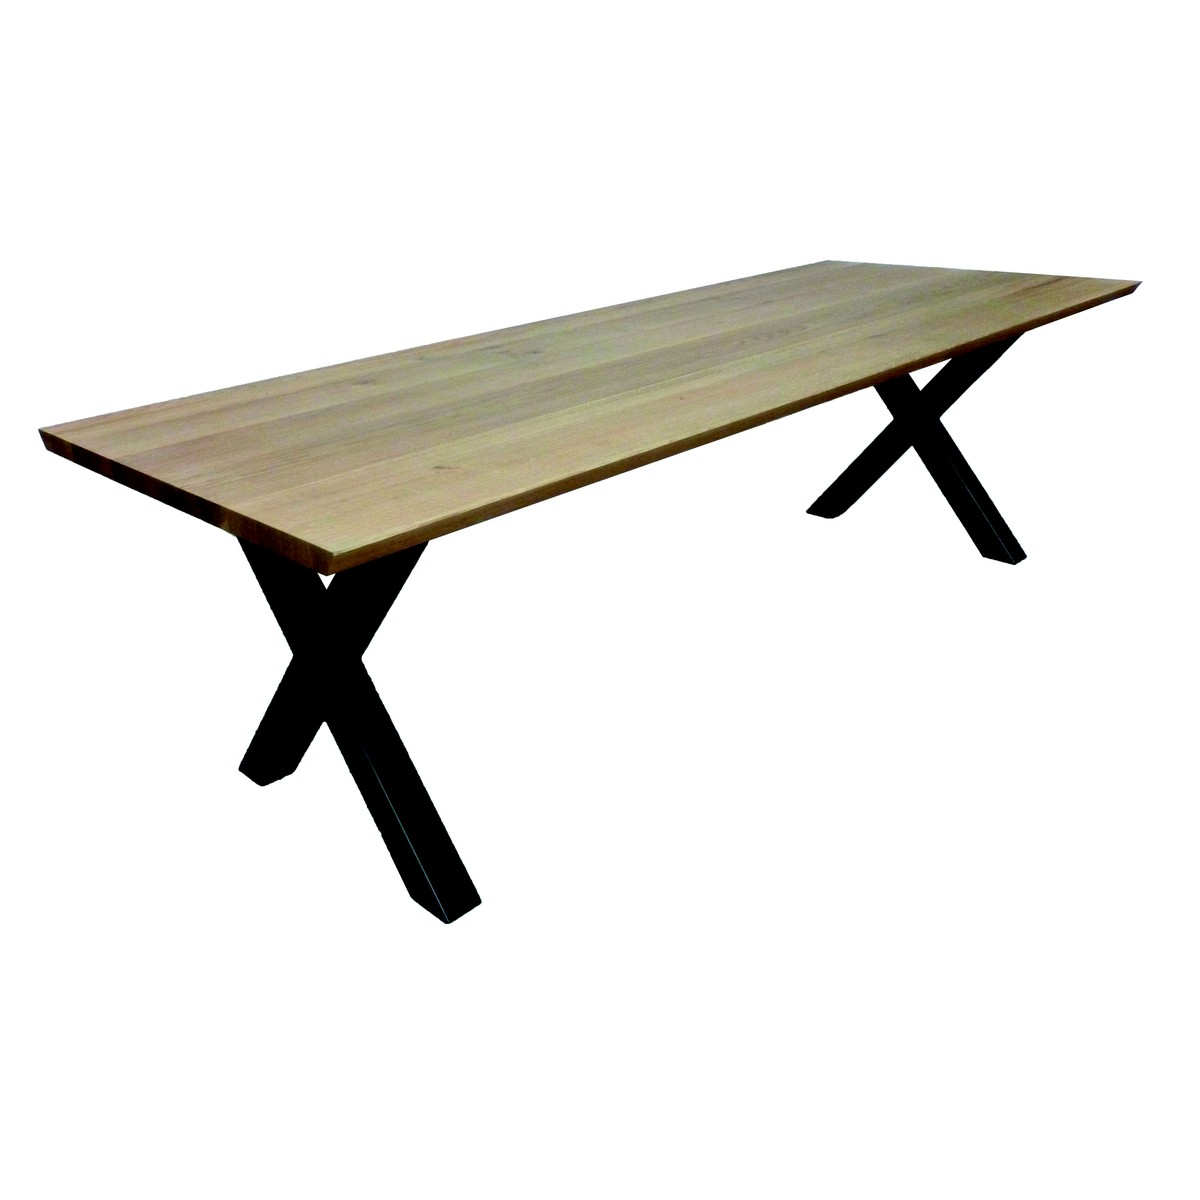   Table haute Zion Seven rectangulaire  160x100x90cm